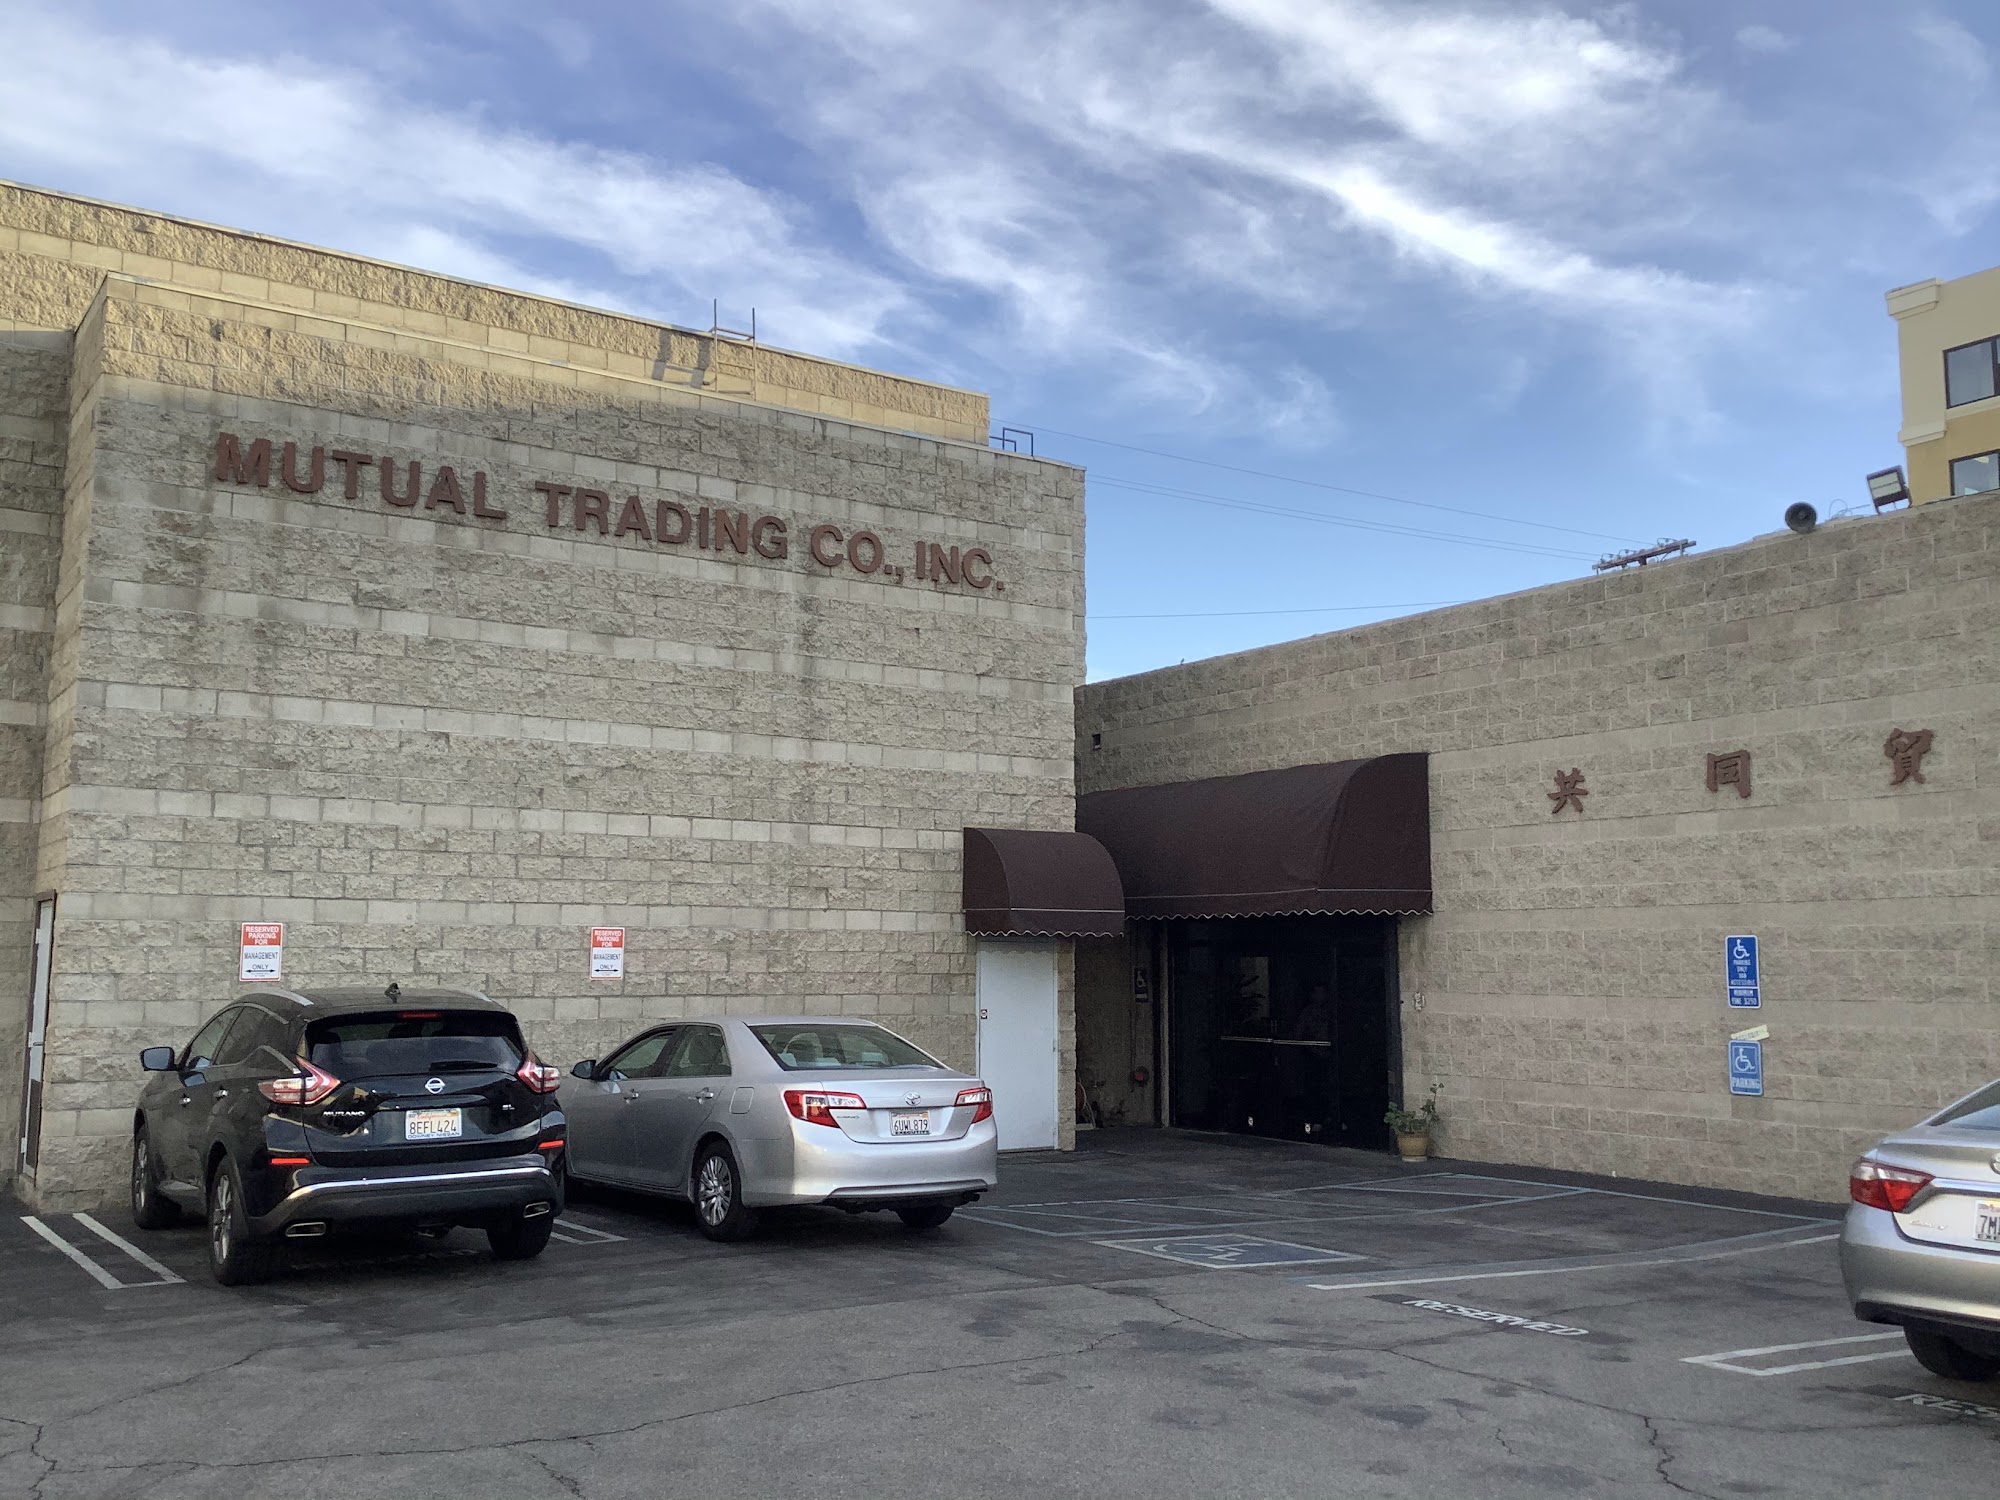 Mutual Trading Co., Inc.